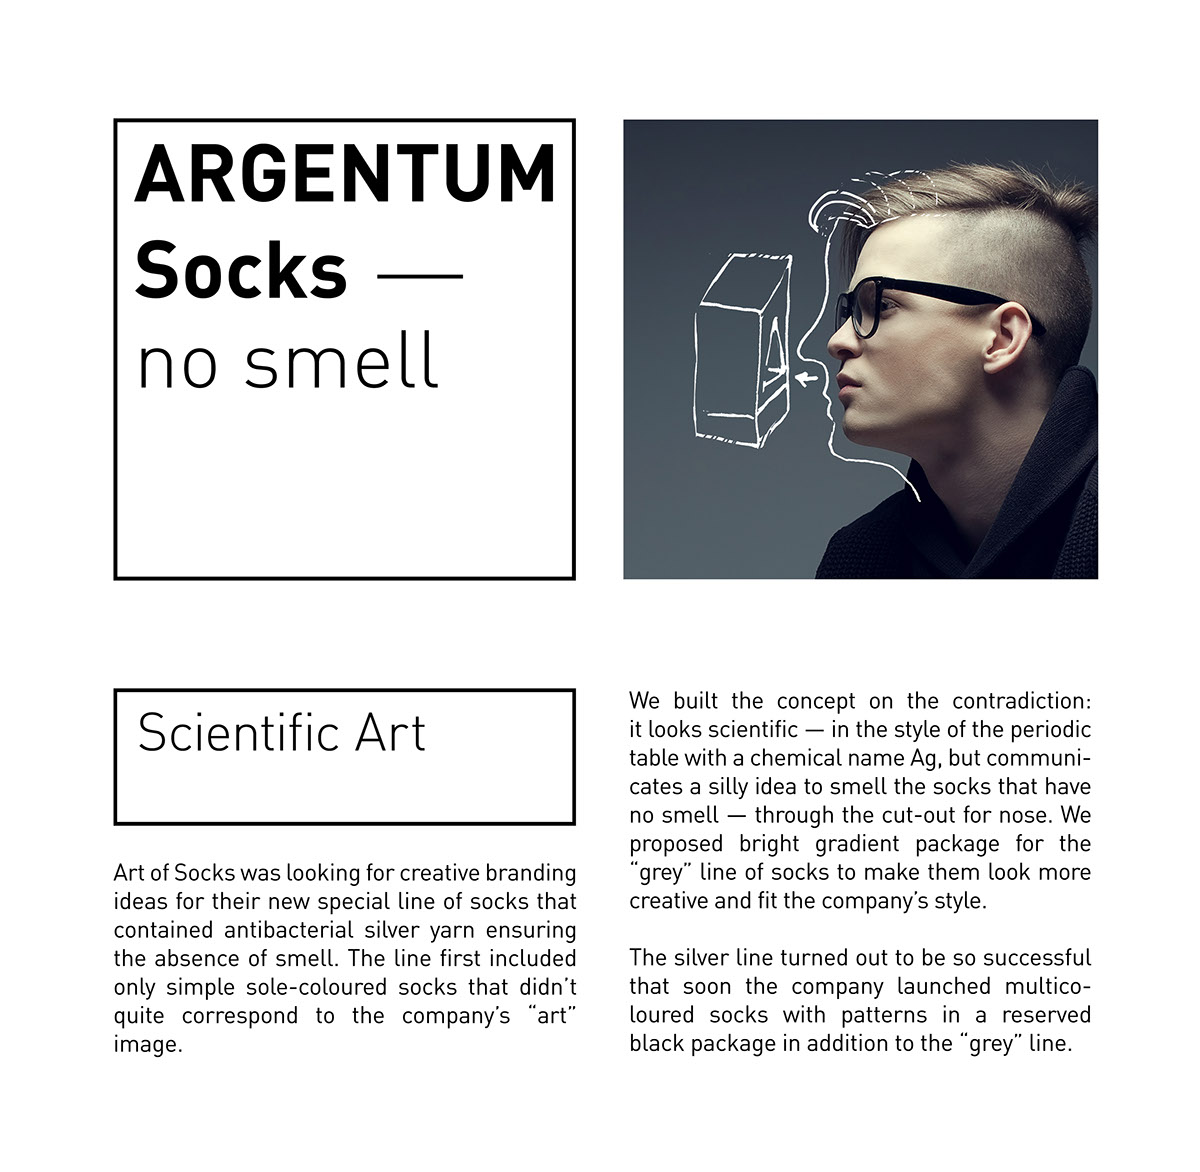 socks argentum silver smell ag reddot pentaward